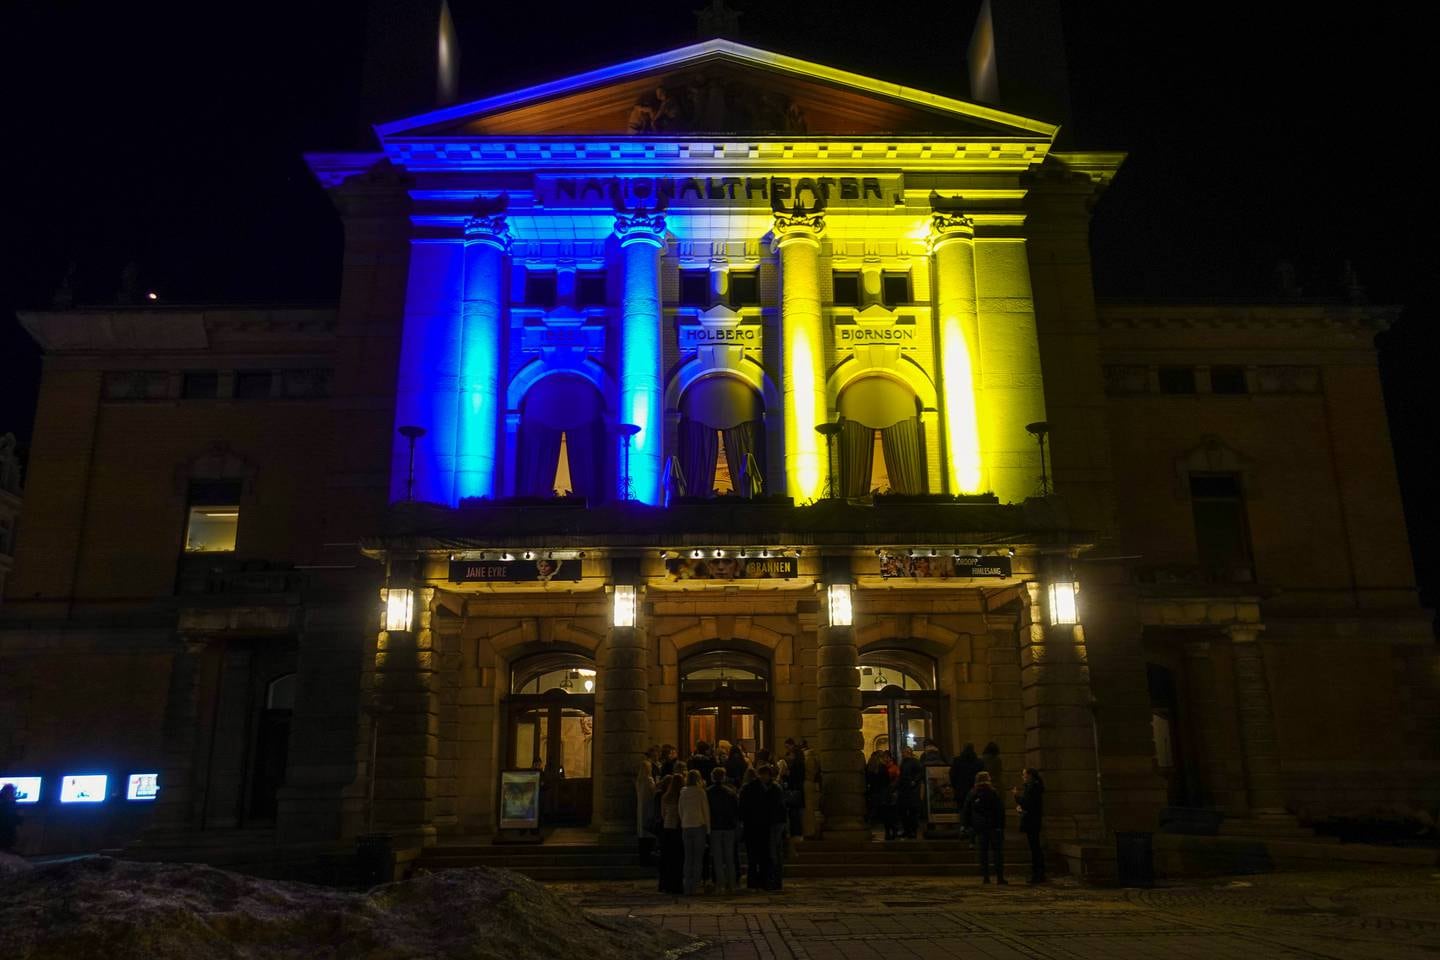 Norske musikk- og scenekunstinstitusjoner, som Nationaltheatret, lyssetter sine bygninger i Ukrainas farger i solidaritet med landet denne uka.